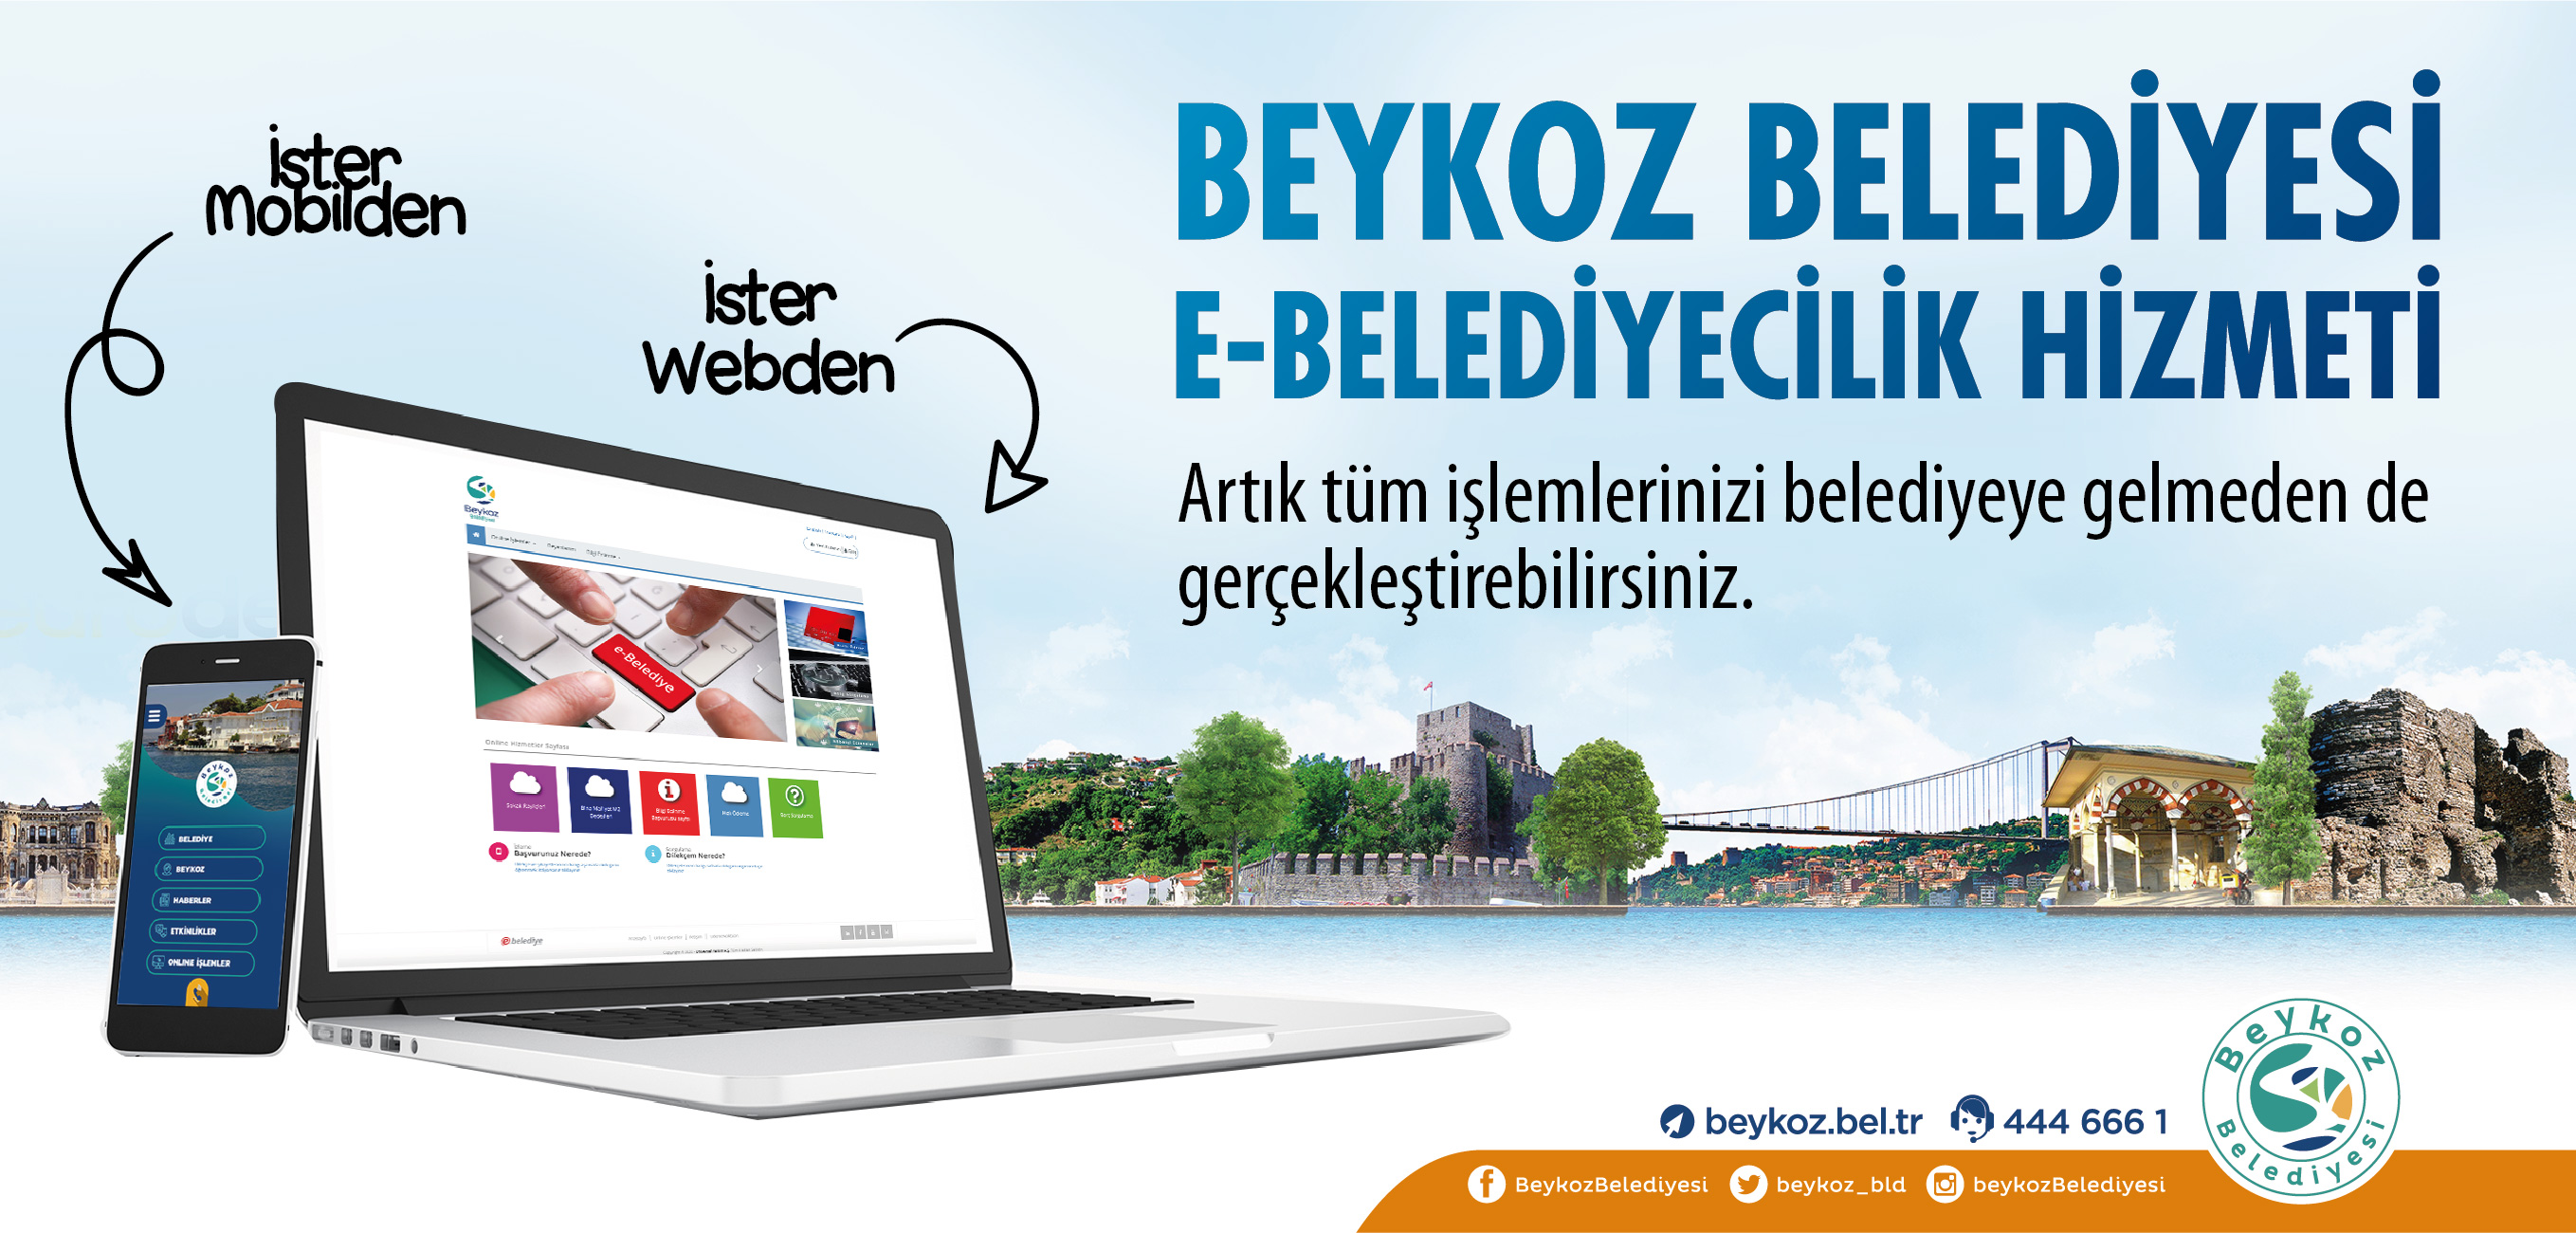 Beykoz Belediyesi Online Hizmetlerle Vatandaşların Yanında